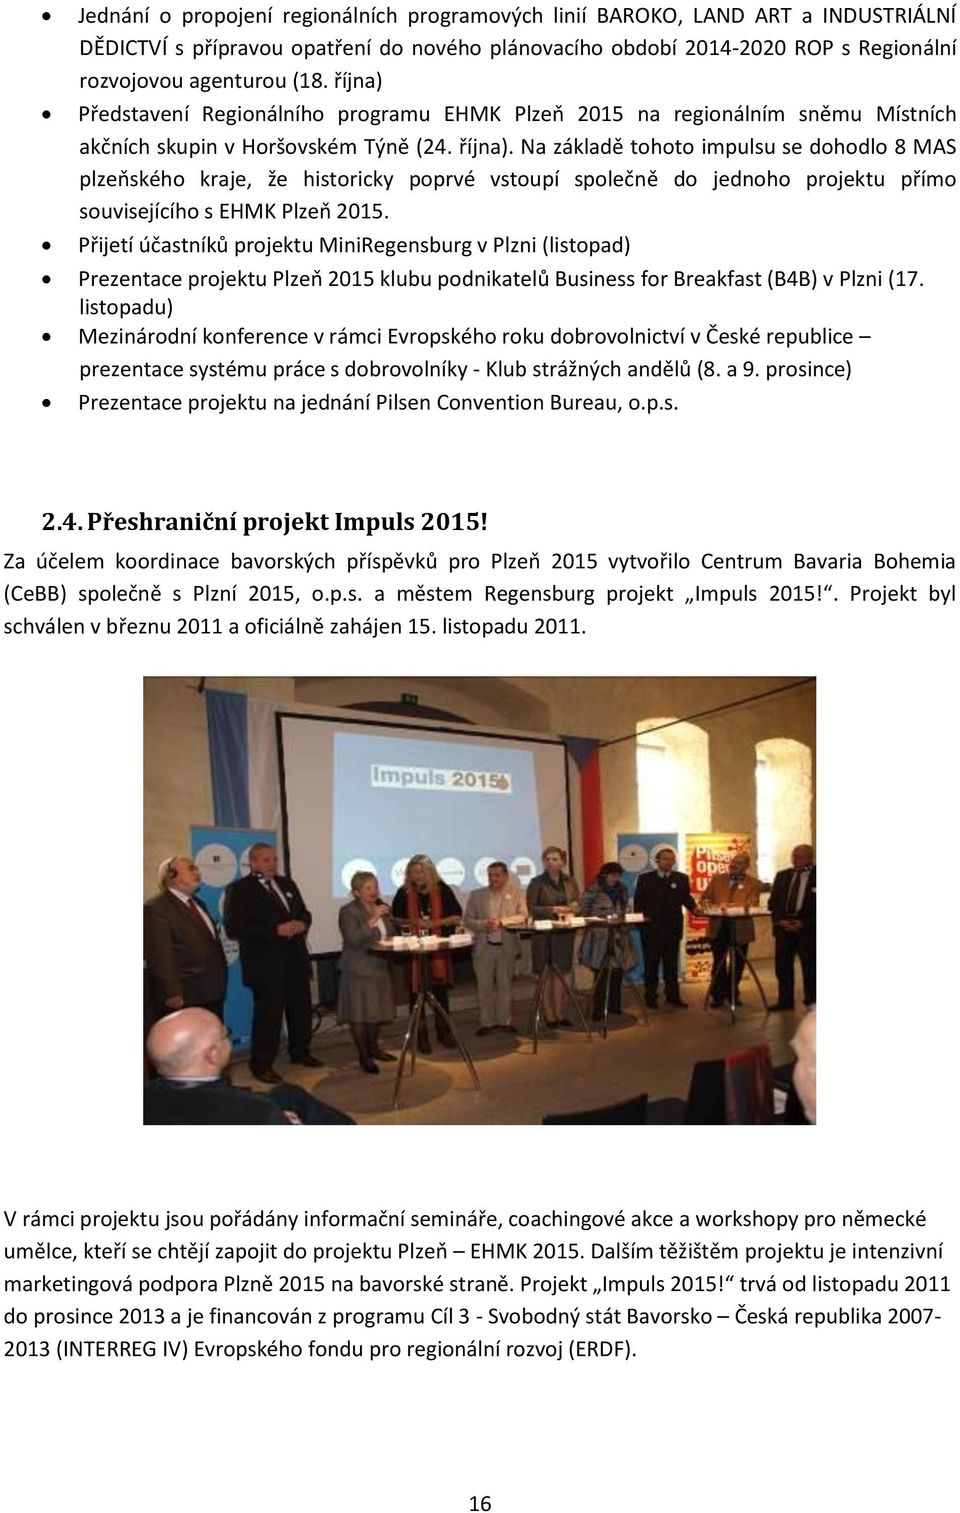 Na základě tohoto impulsu se dohodlo 8 MAS plzeňského kraje, že historicky poprvé vstoupí společně do jednoho projektu přímo souvisejícího s EHMK Plzeň 2015.